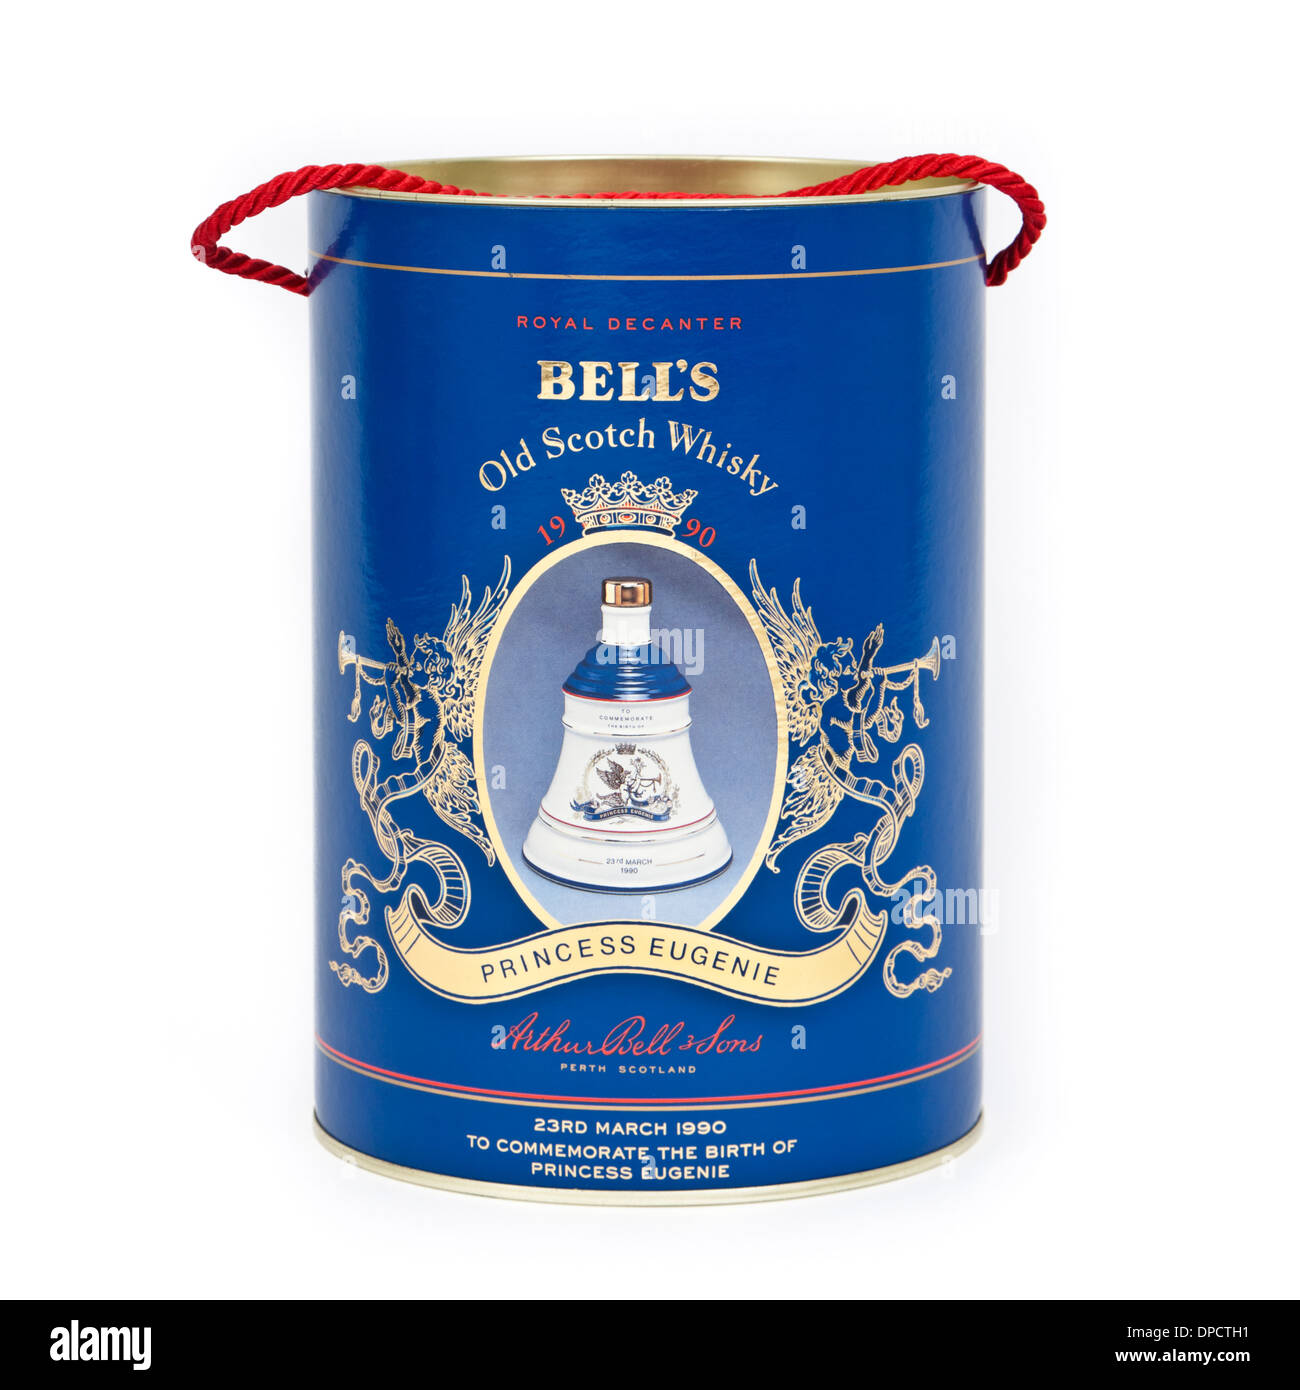 Bells Old Scotch Whisky - Box Porzellan Royal Decantermade von Wade, zum Gedenken an die Geburt von Prinzessin Eugenie (23.03.1990) Stockfoto